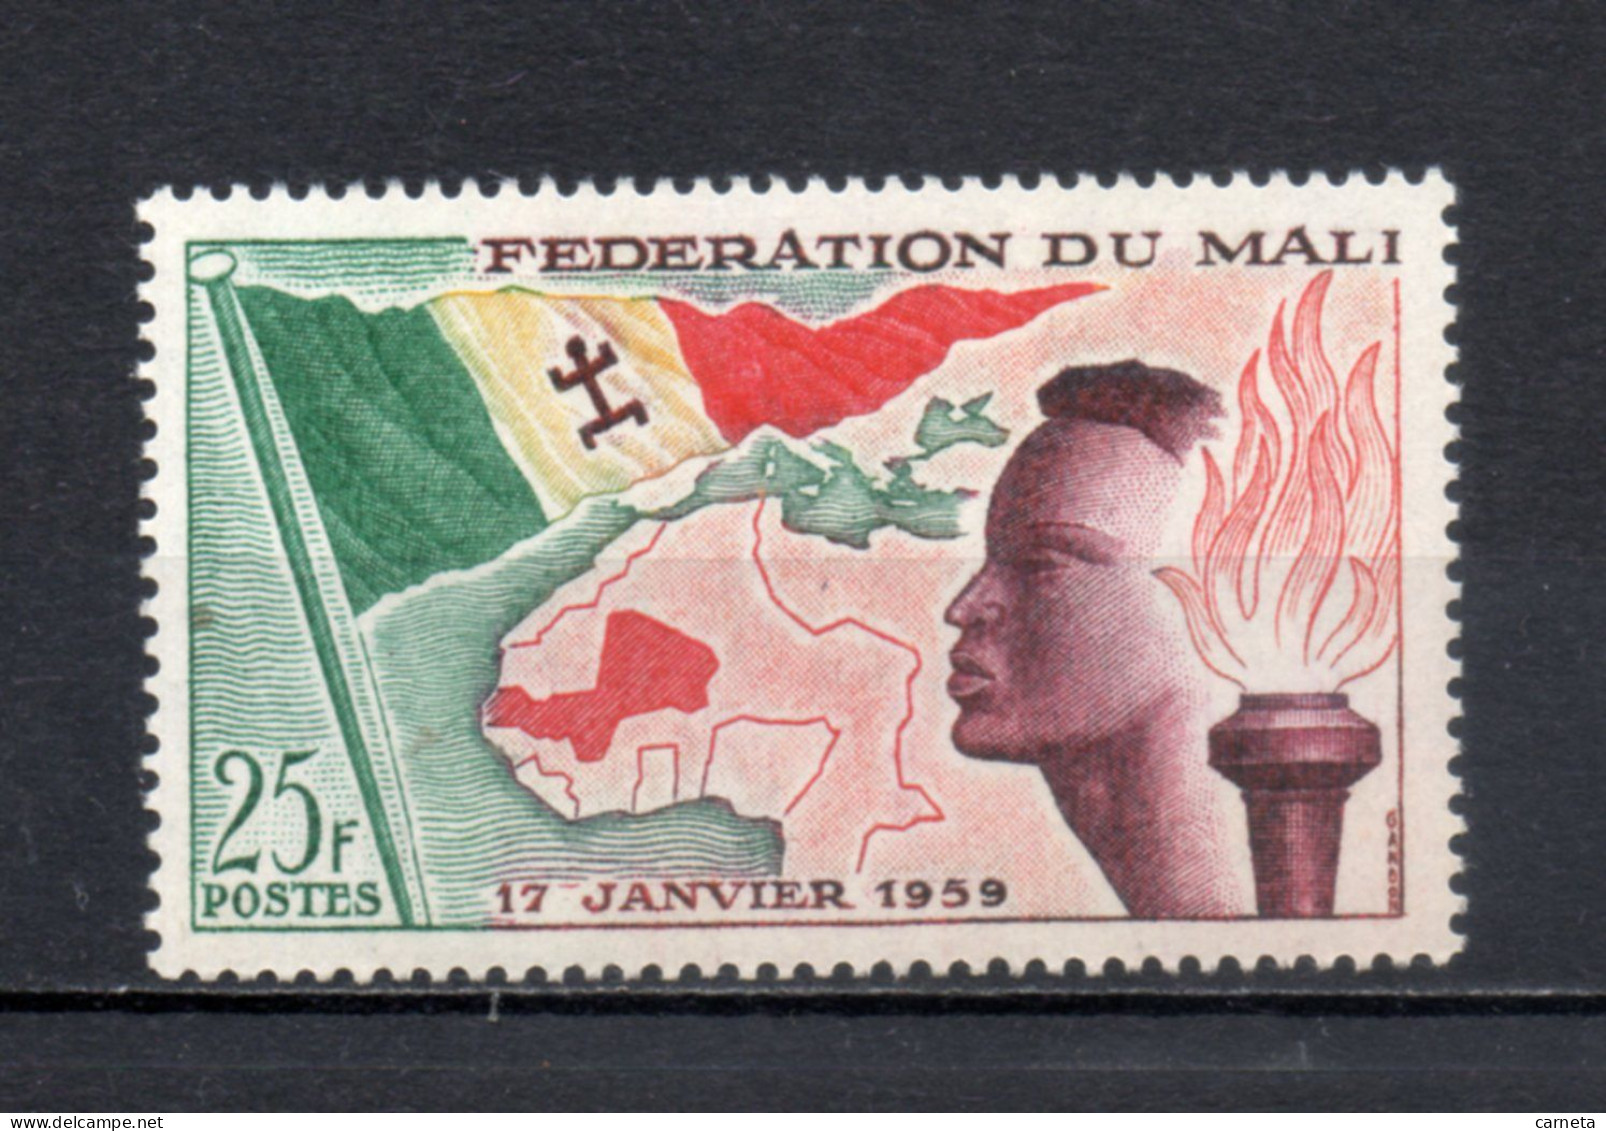 MALI  N° 1  NEUF SANS CHARNIERE  COTE 2.00€  CREATION DE LA FEDERATION DRAPEAU  VOIR DESCRIPTION - Mali (1959-...)